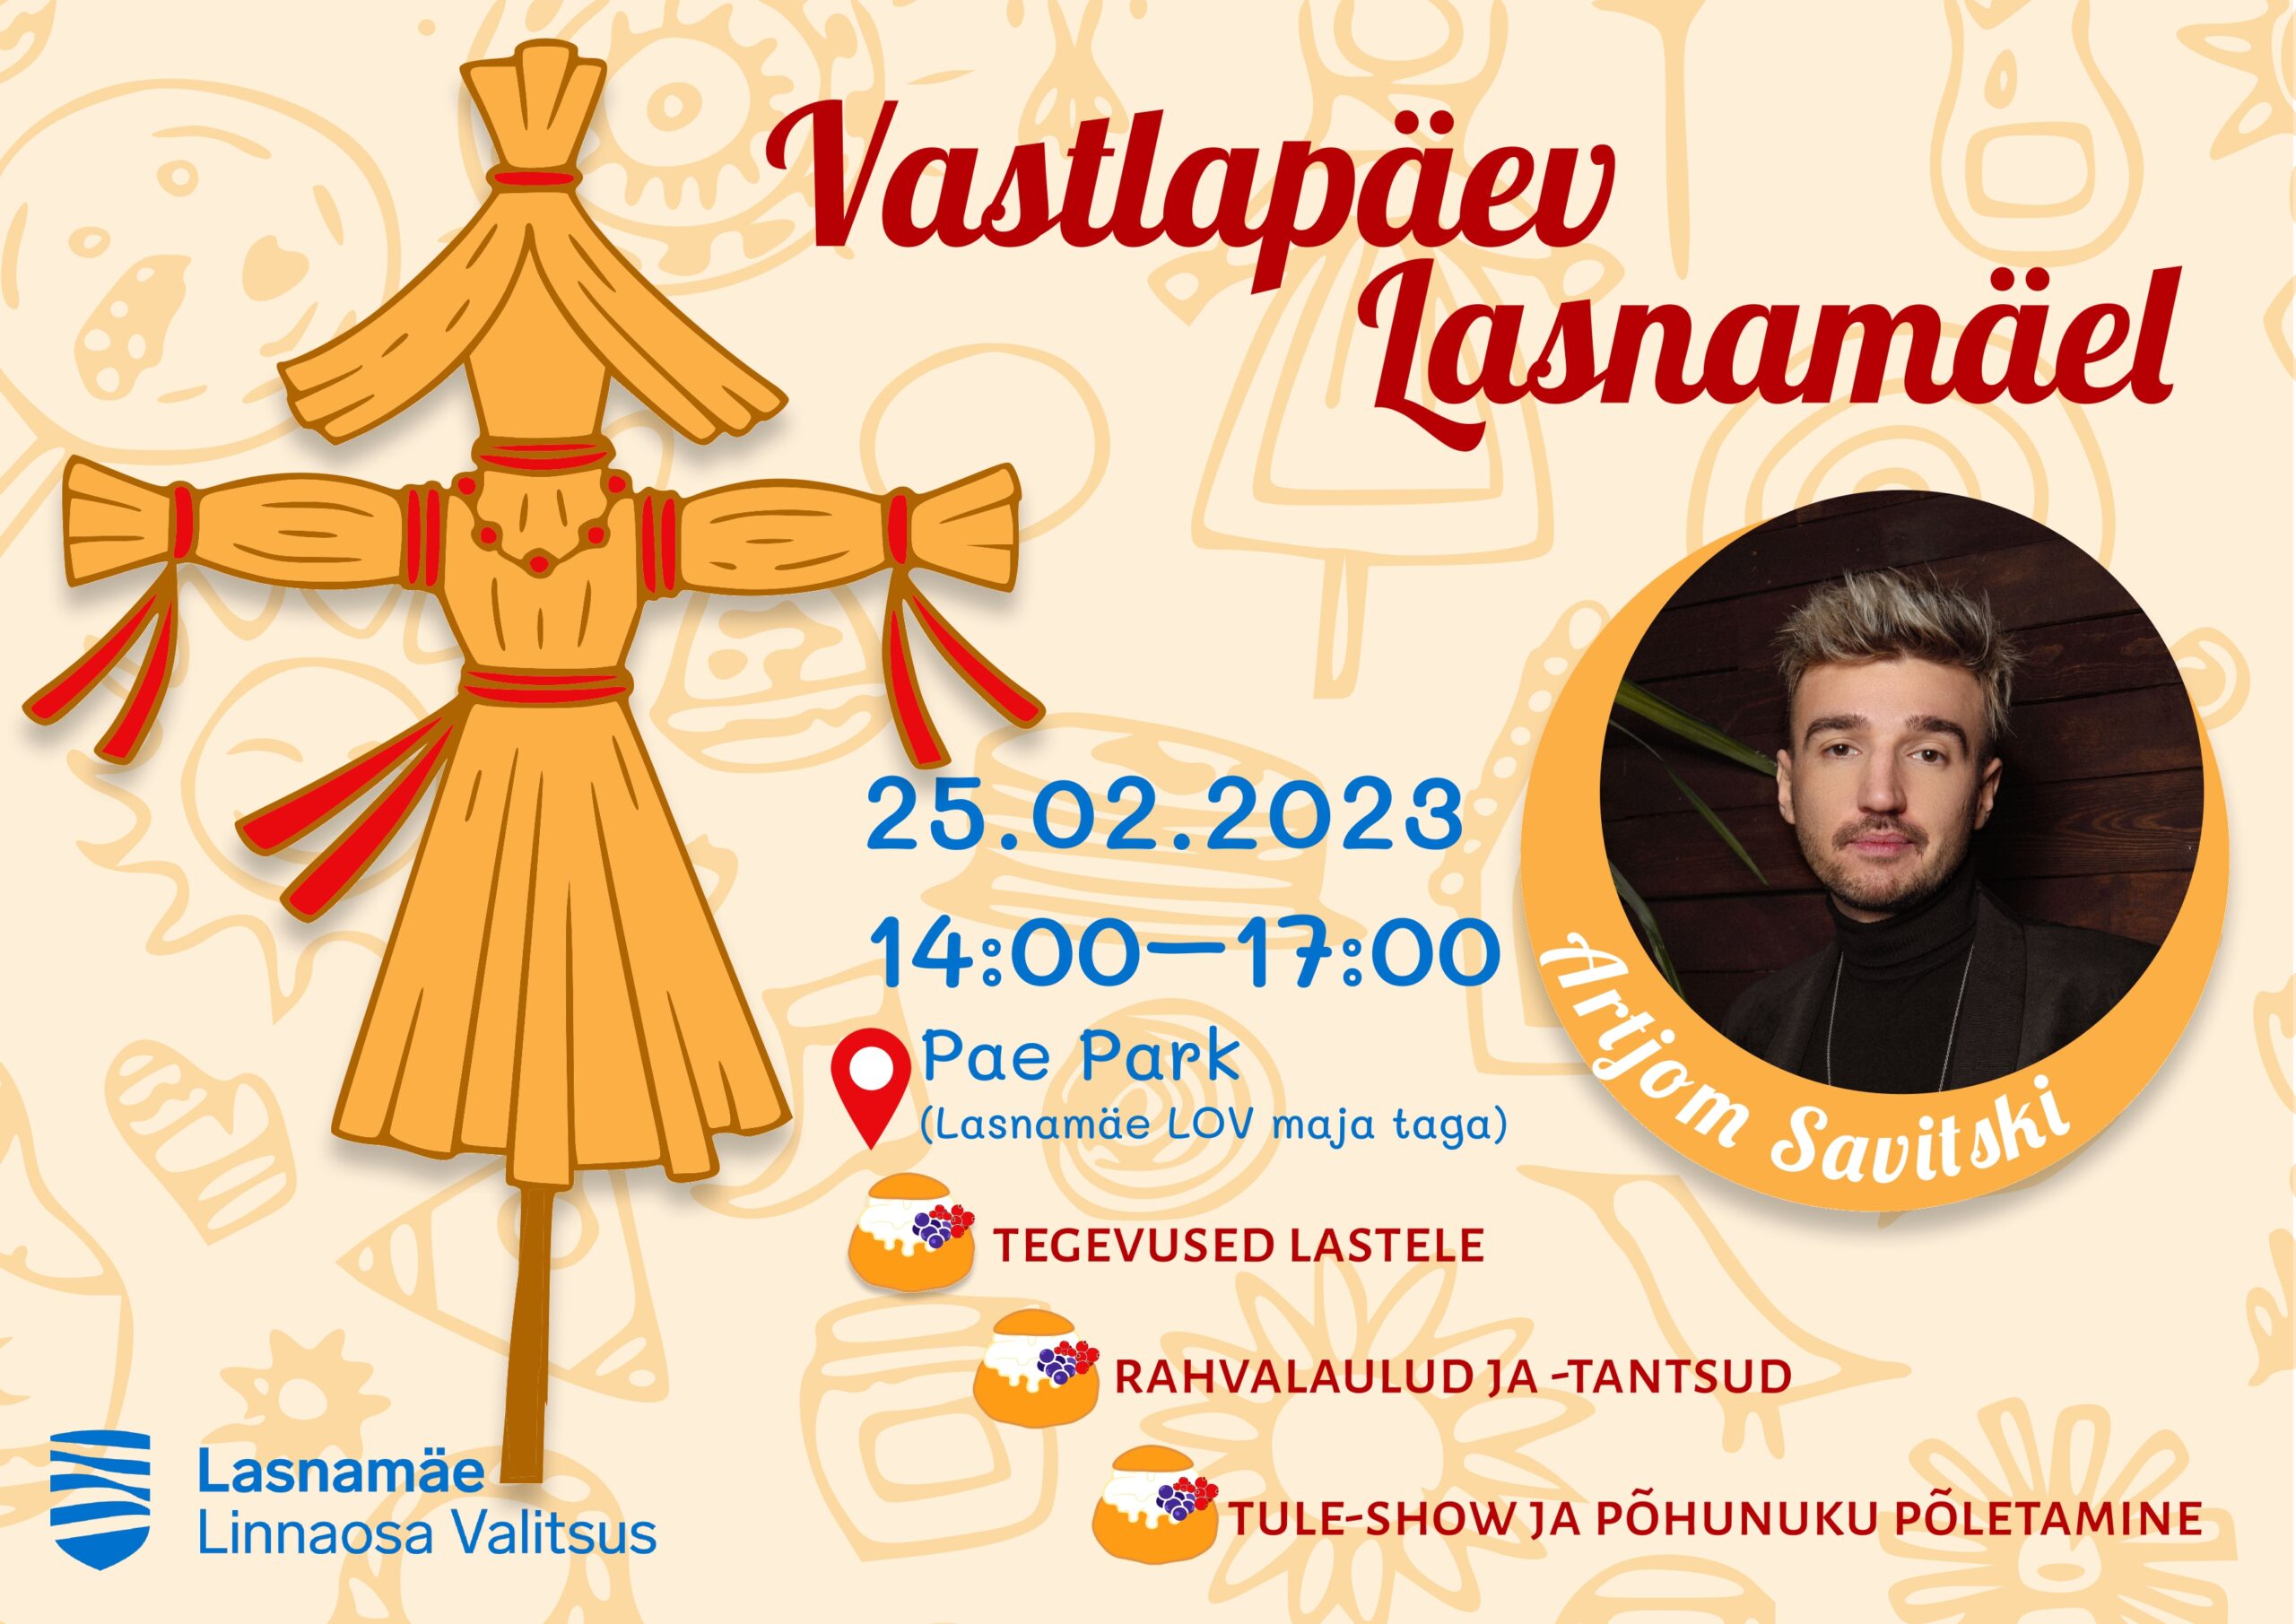 Управа района Ласнамяэ приглашает вас сегодня отметить Масленицу в парке Паэ. Рекламный постер управы района Ласнамяэ.